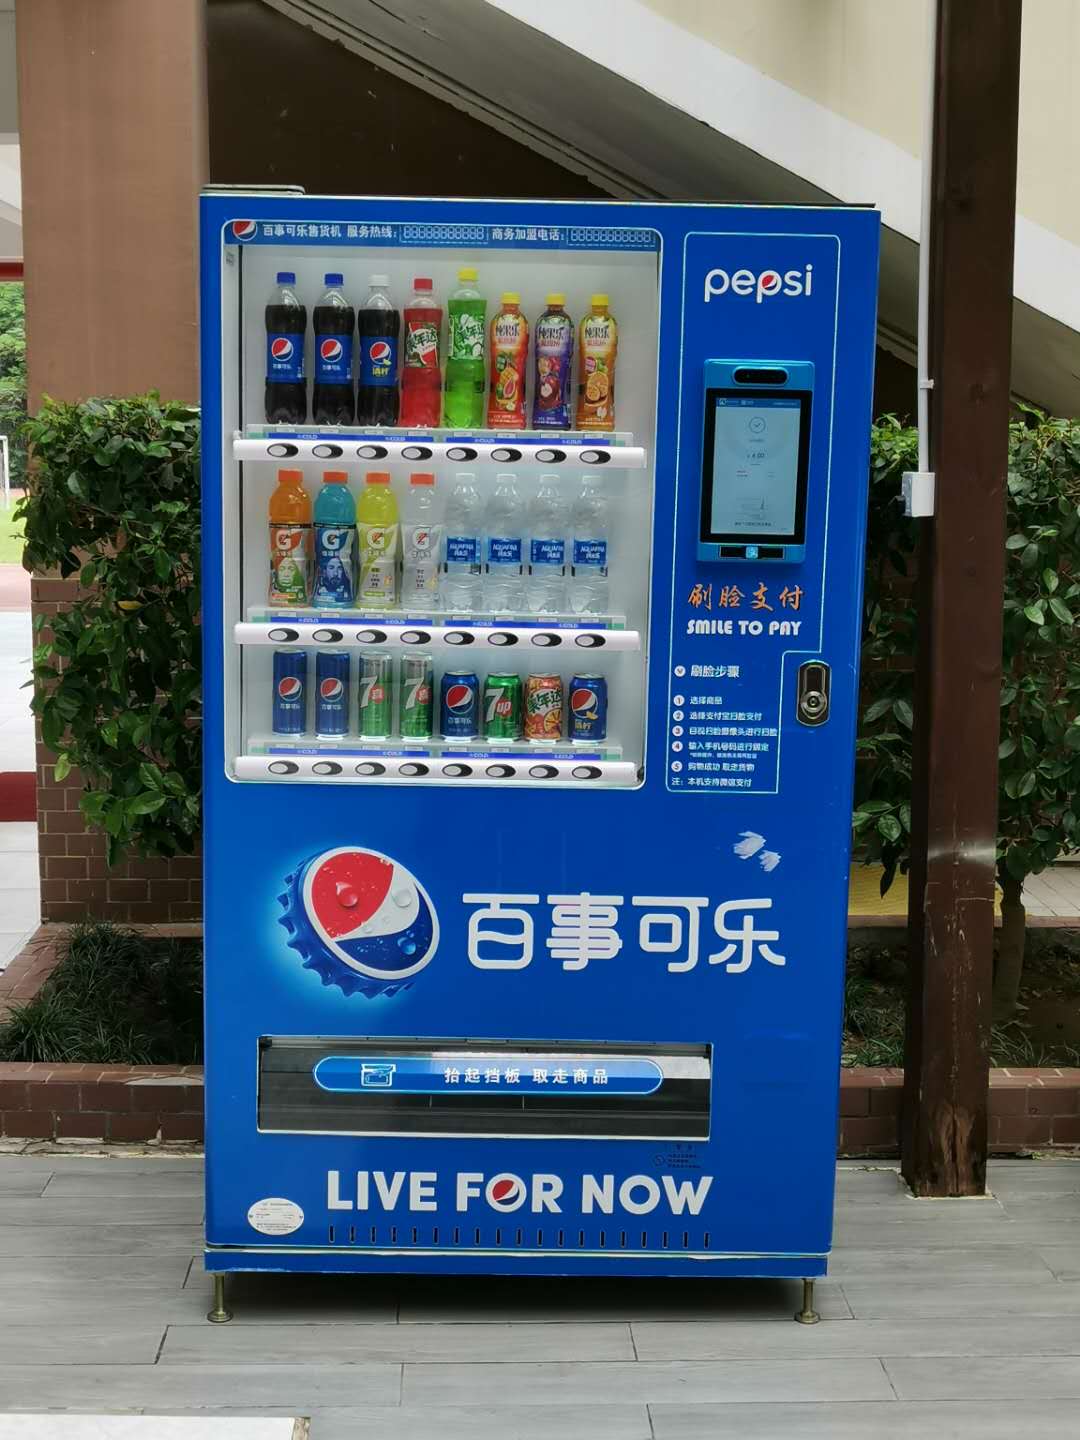 五大类型的饮料自动售货机都在这里